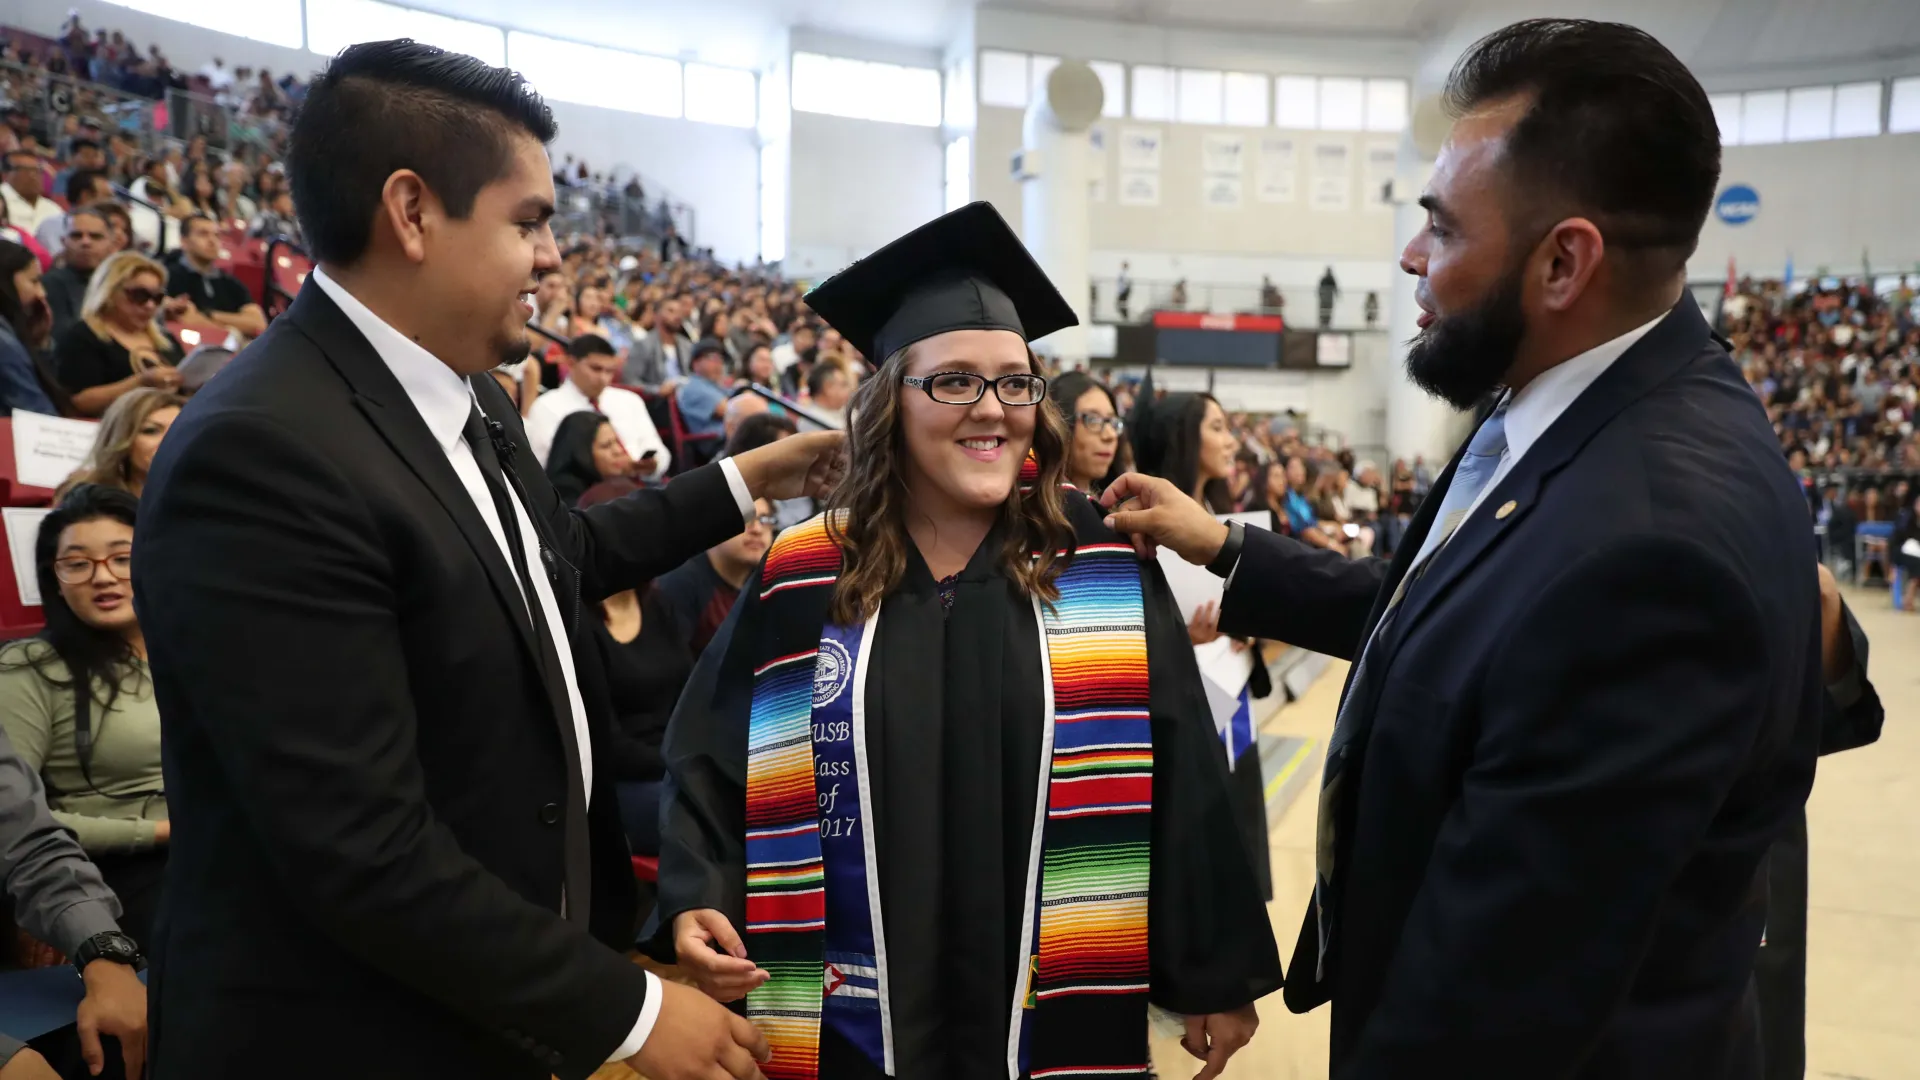 "CSUSB Latino Grad Ceremony in 2017"